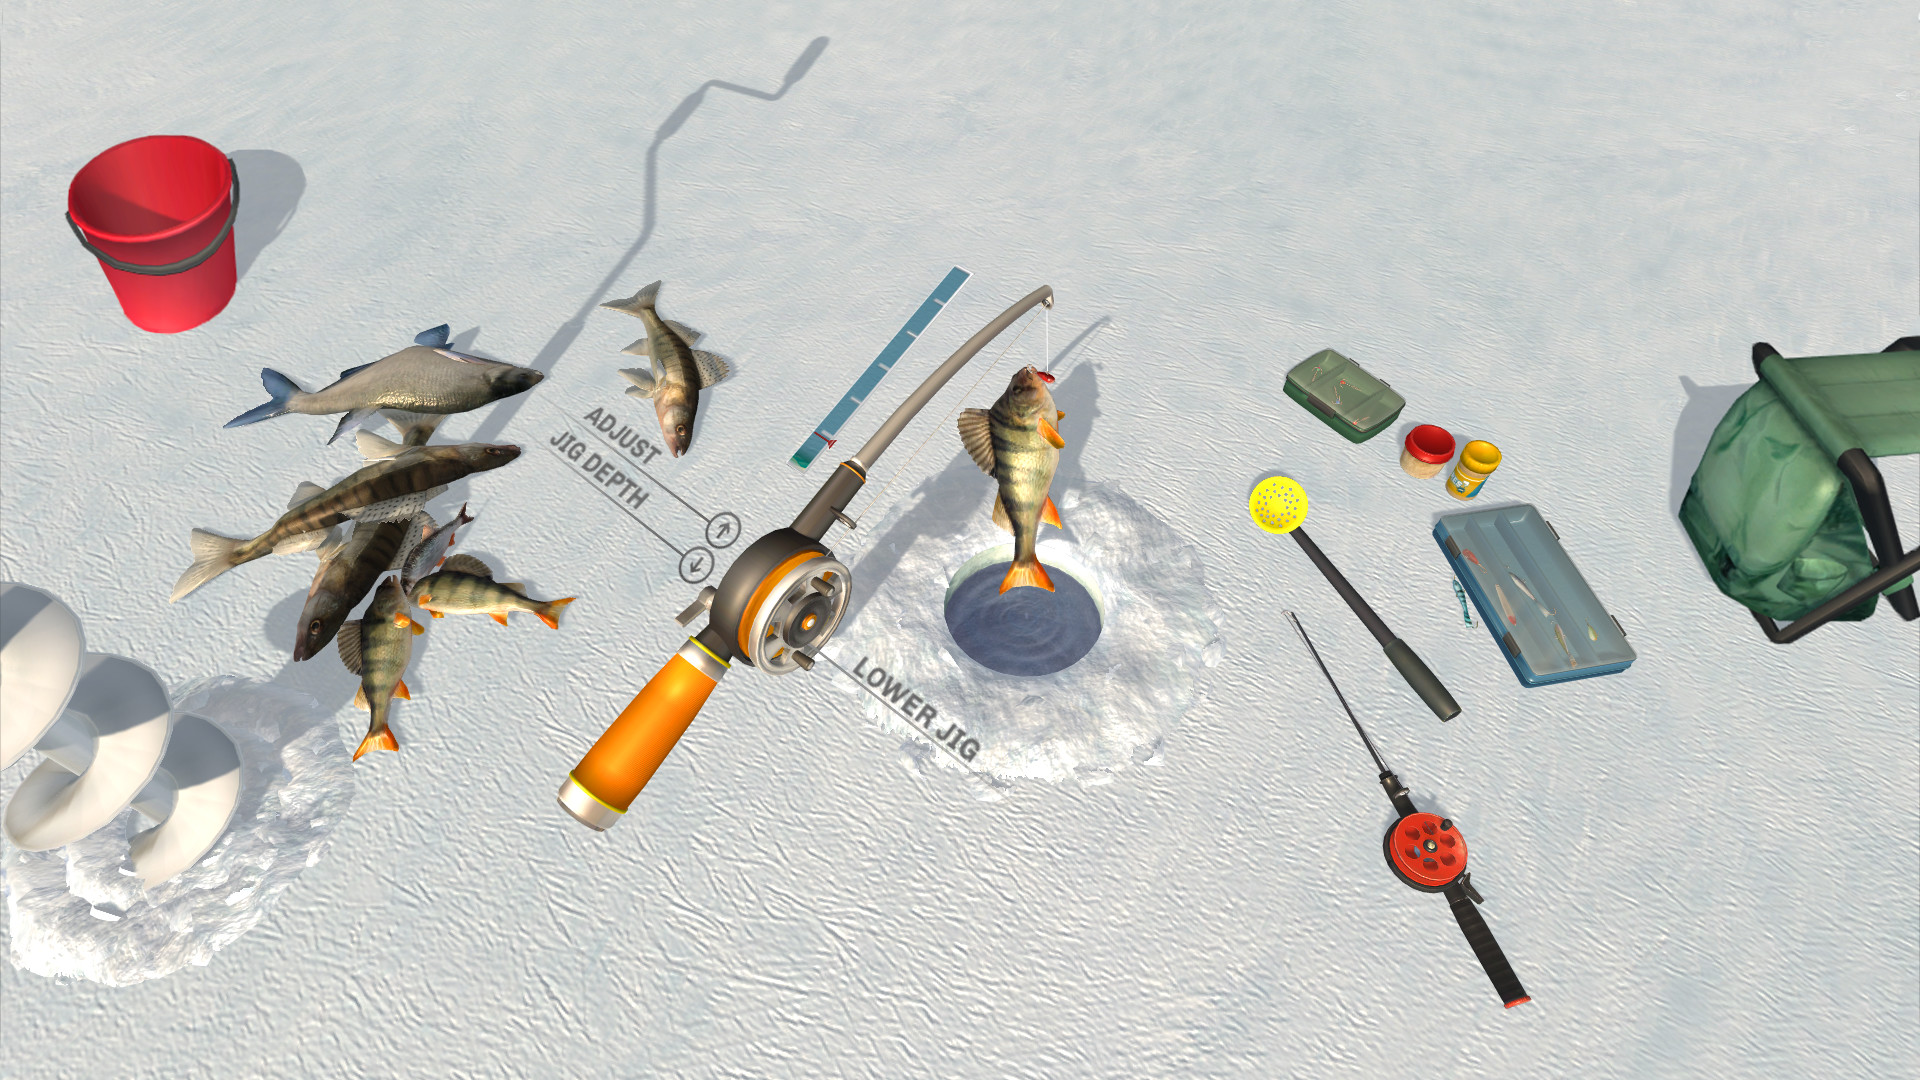 《冰湖垂纶》让玩家体验垂纶乐趣 如何才怒冲冲呼呼钓到鱼？